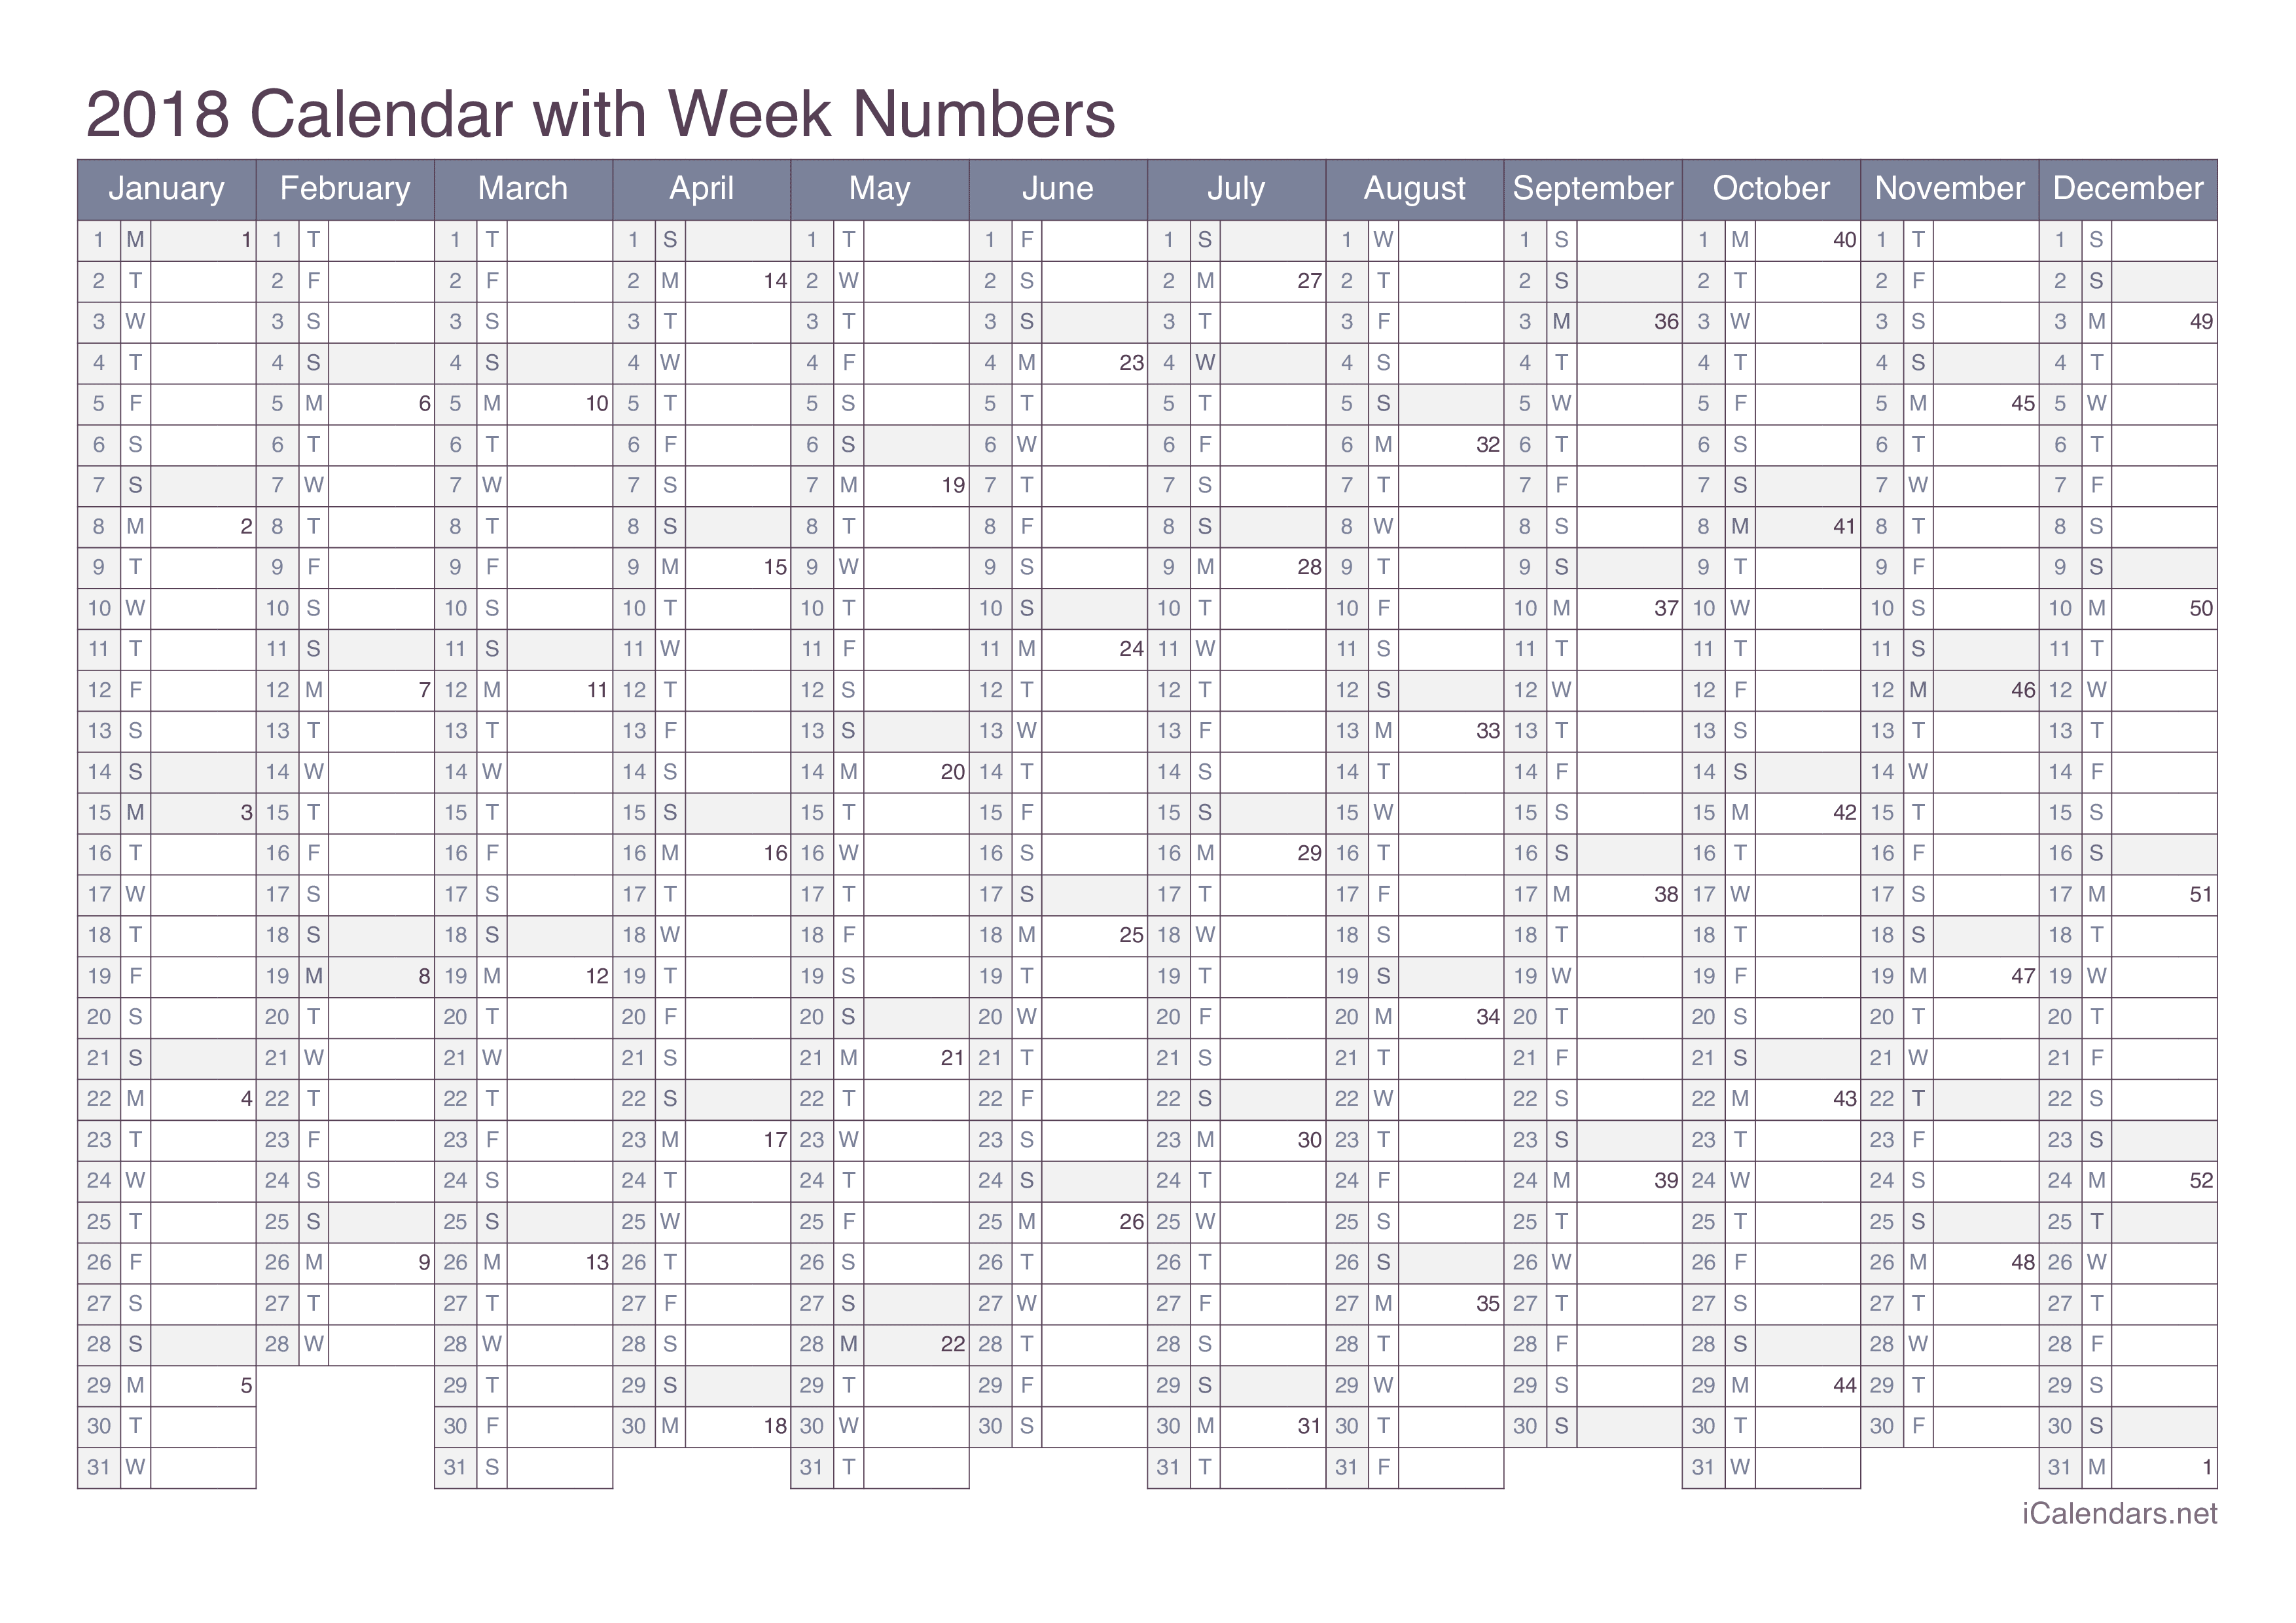 2018 Calendar with week numbers - Office